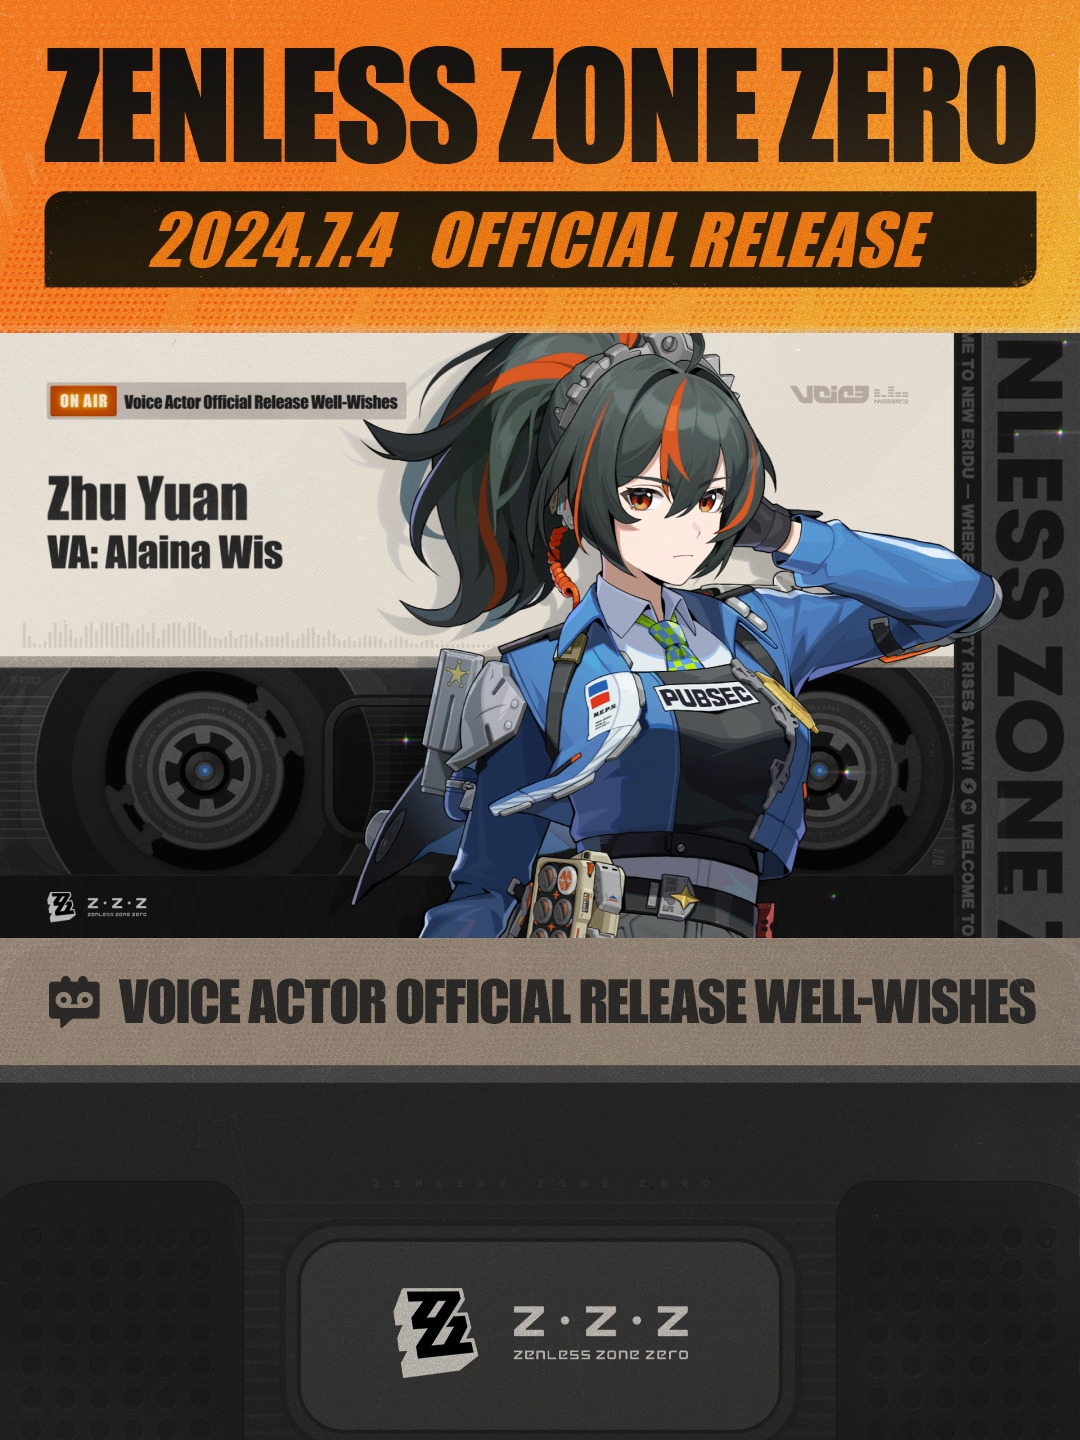 Zenless Zone Zero Release Voice Actor Well-Wishes: Zhu Yuan Well-Wishes From Zhu Yuan's VA - #AlainaWis  #zzzero #zenless0704 #zenlesszonezero  #ZhuYuan